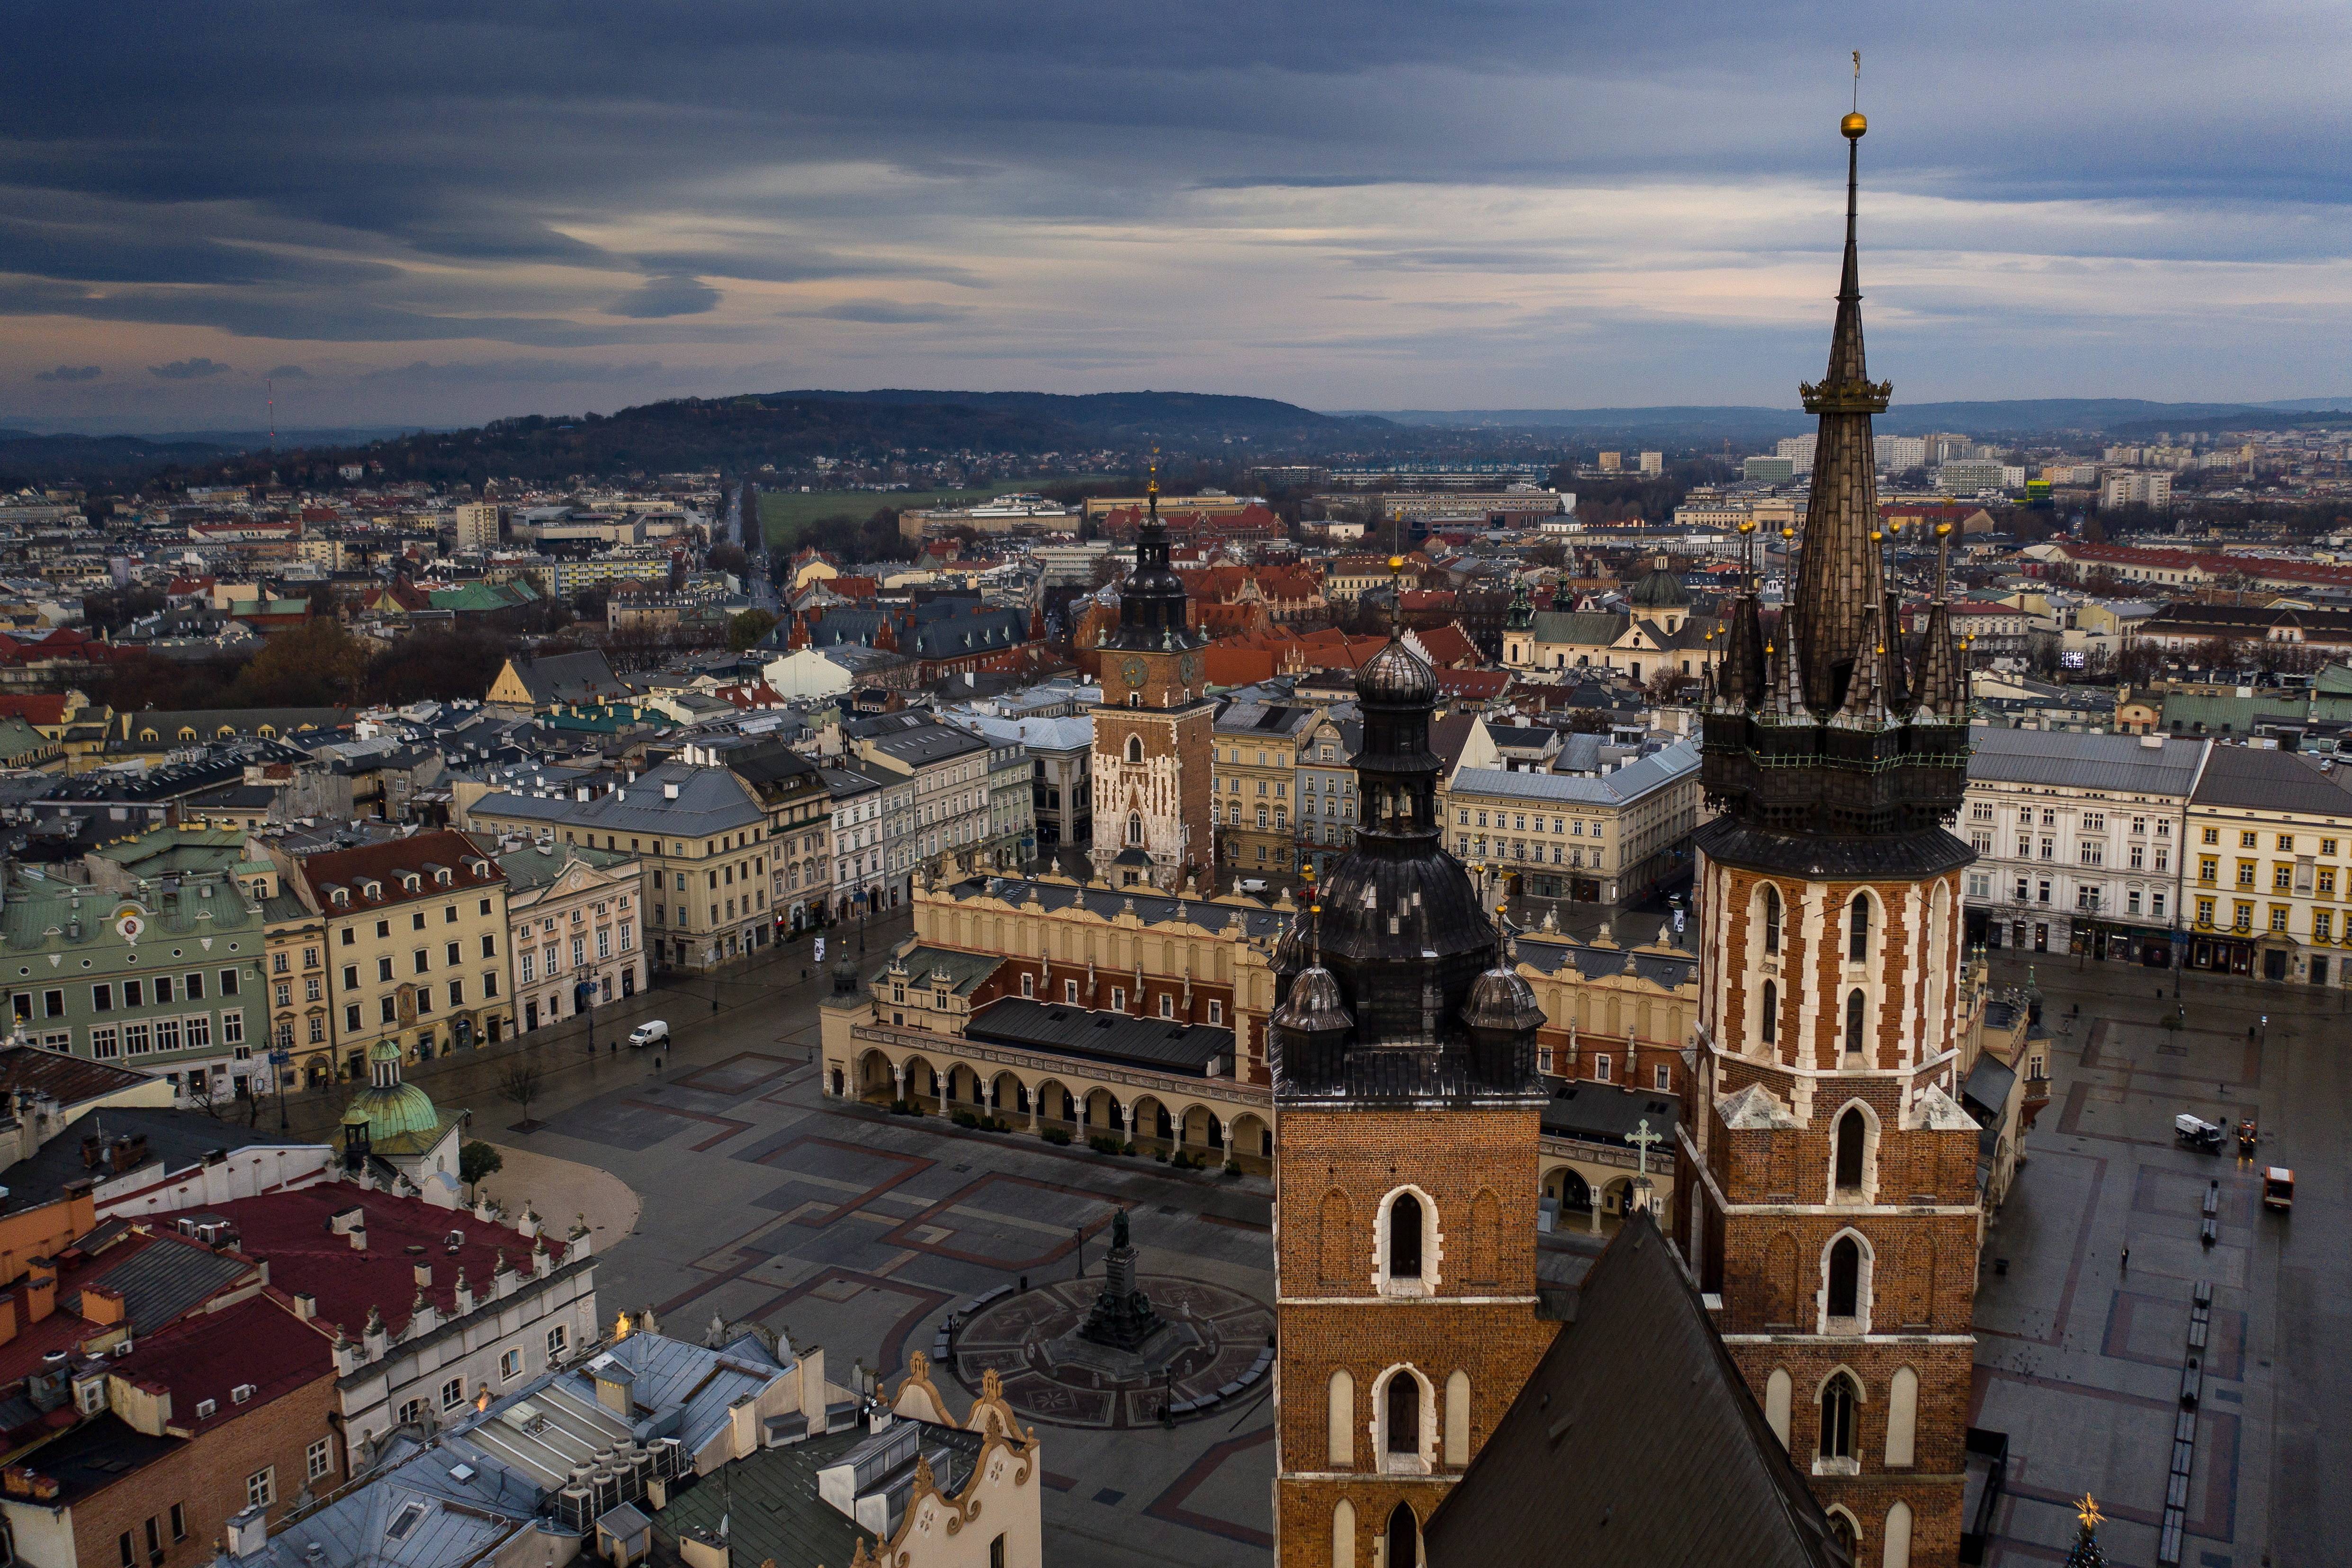 这是12月5日在波兰城市克拉科夫拍摄的圣玛丽教堂(无人机航拍).